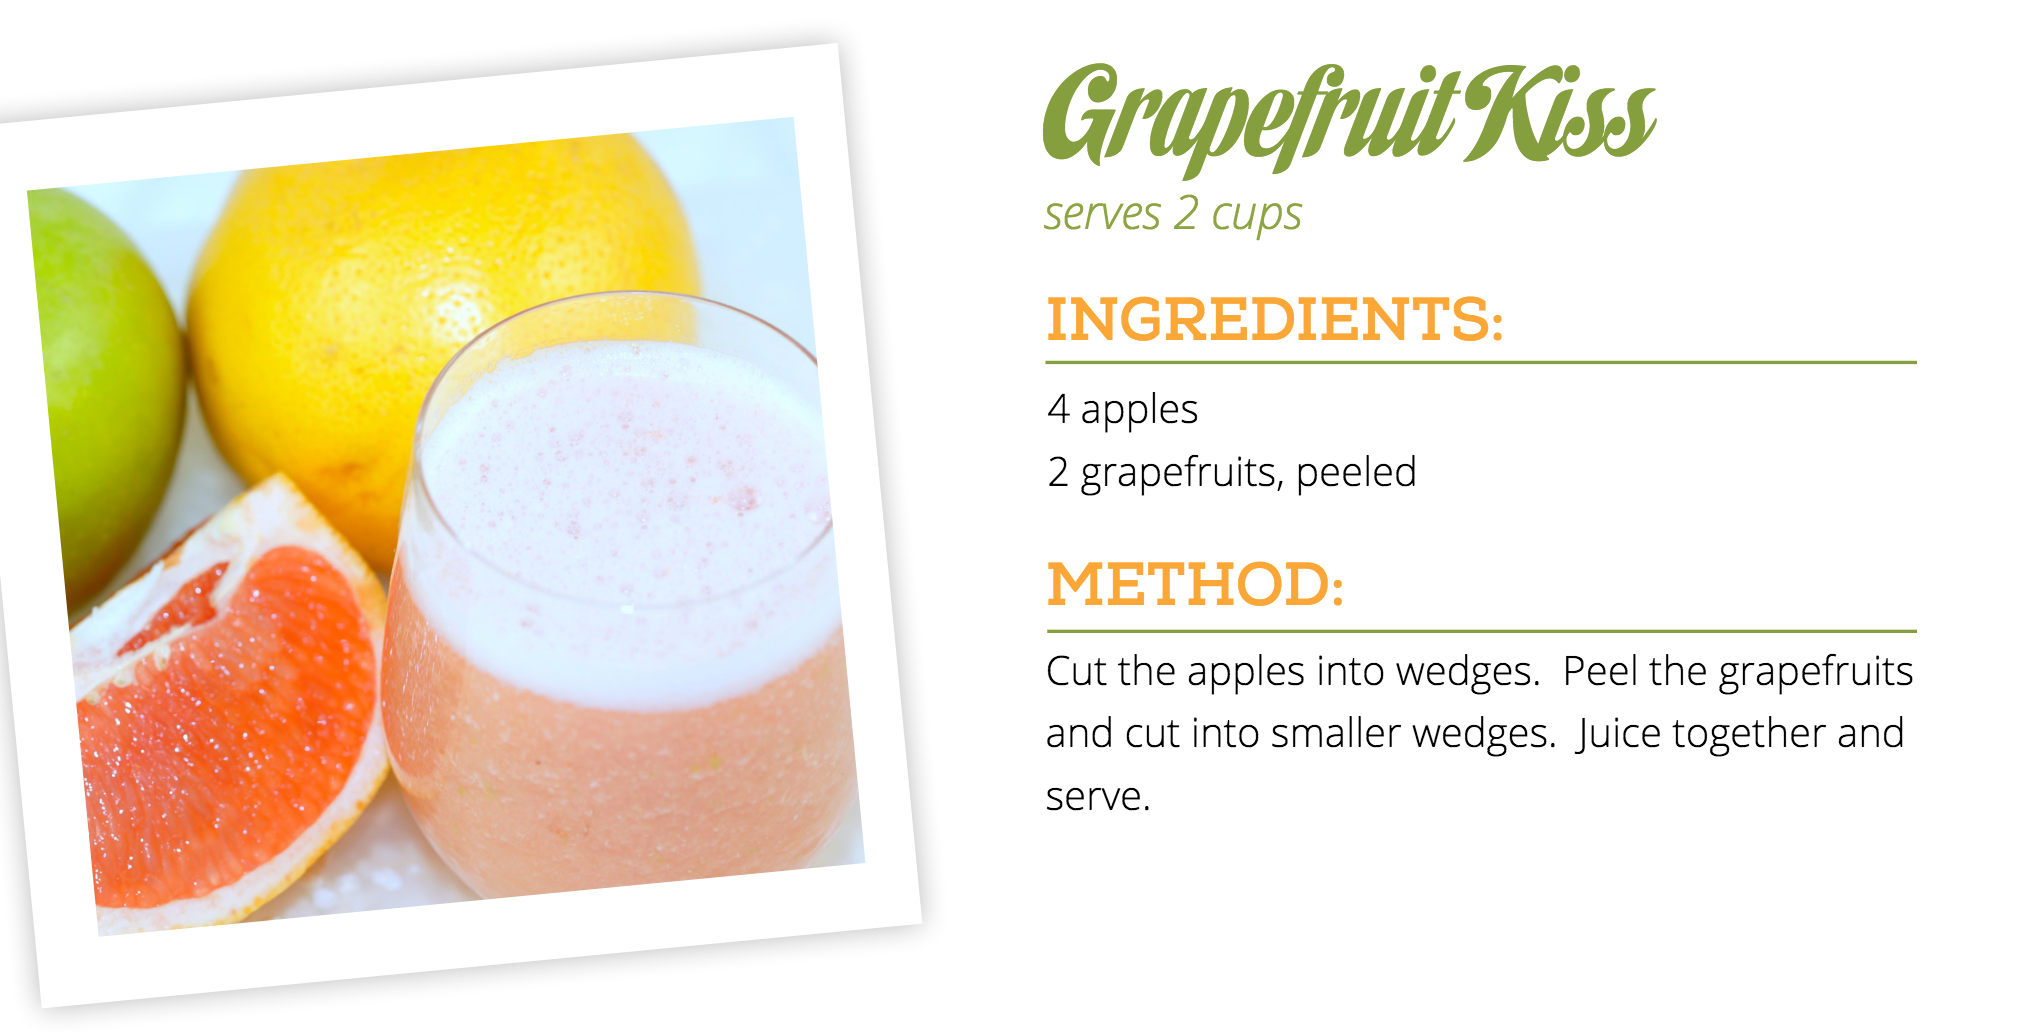 Reasons to Drink Grapefruit Juice | Benefits of Grapefruit